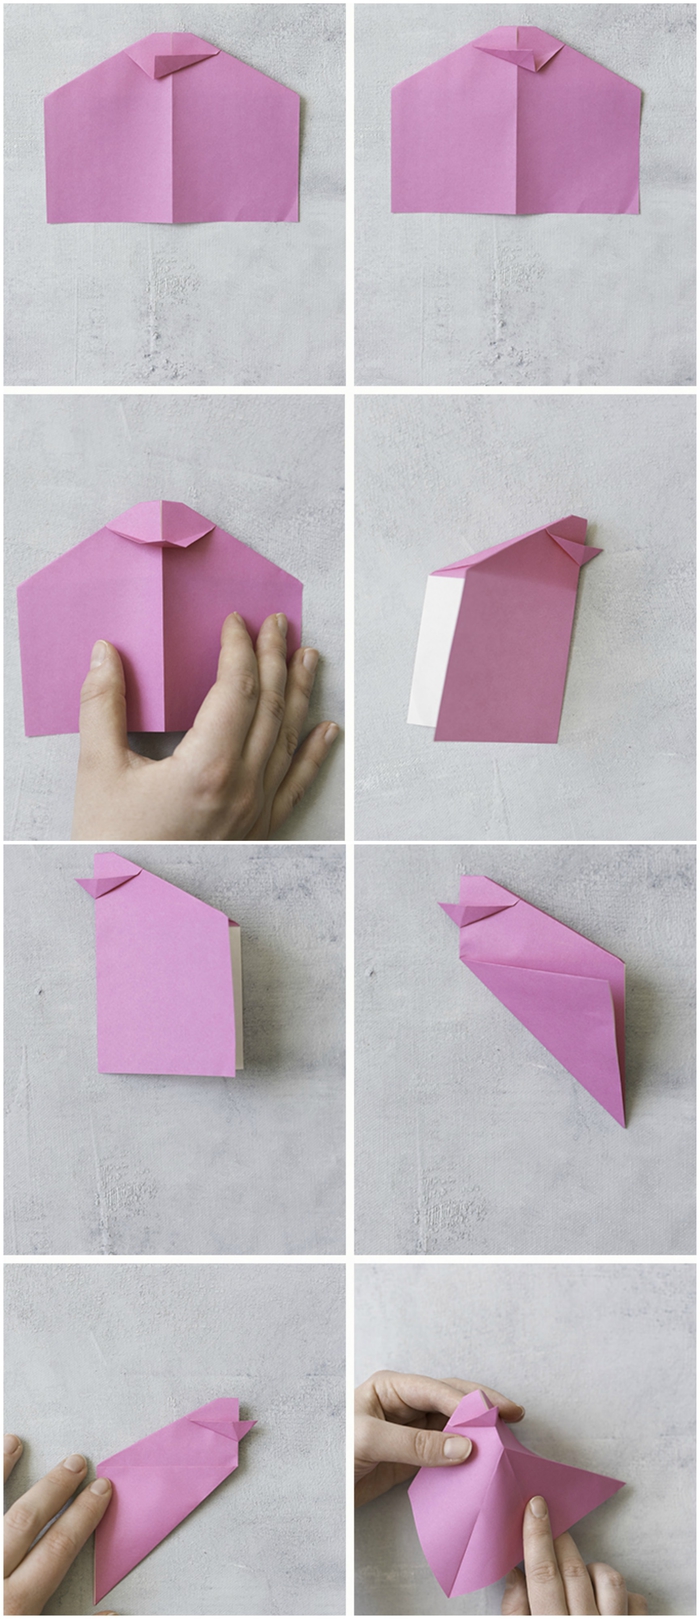 un modèle d'origami oiseau coloré pour la déco d'une table festive, activité manuelle pour la fête de pâques